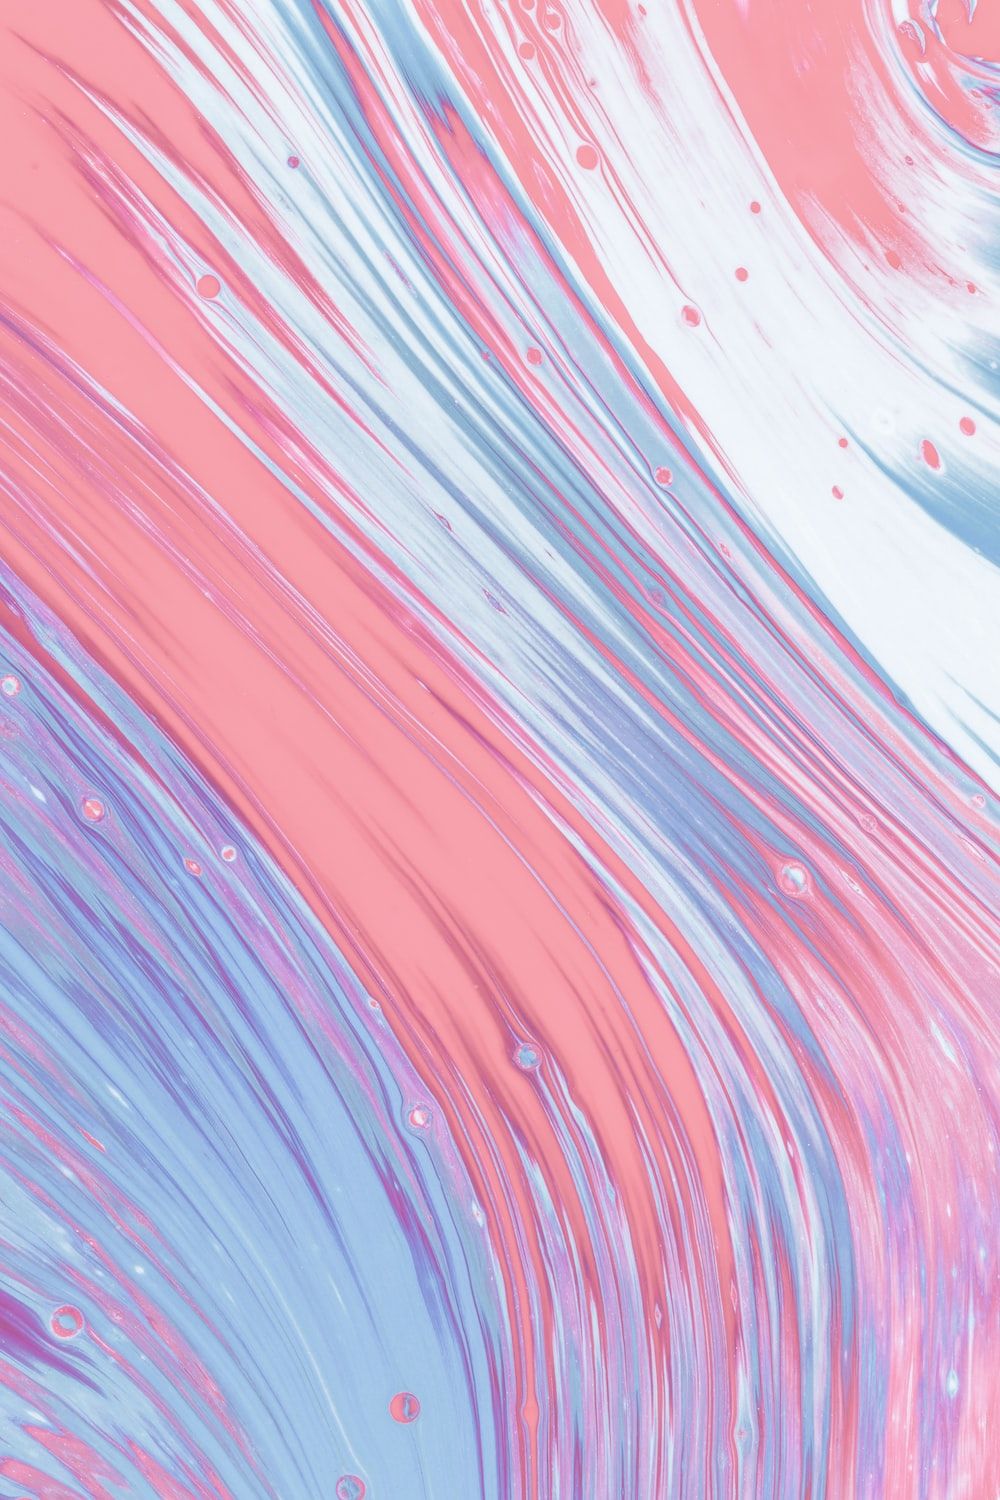 Fraktale Hintergrundbild 1000x1500. Foto zum Thema rosa und weiße abstrakte Malerei